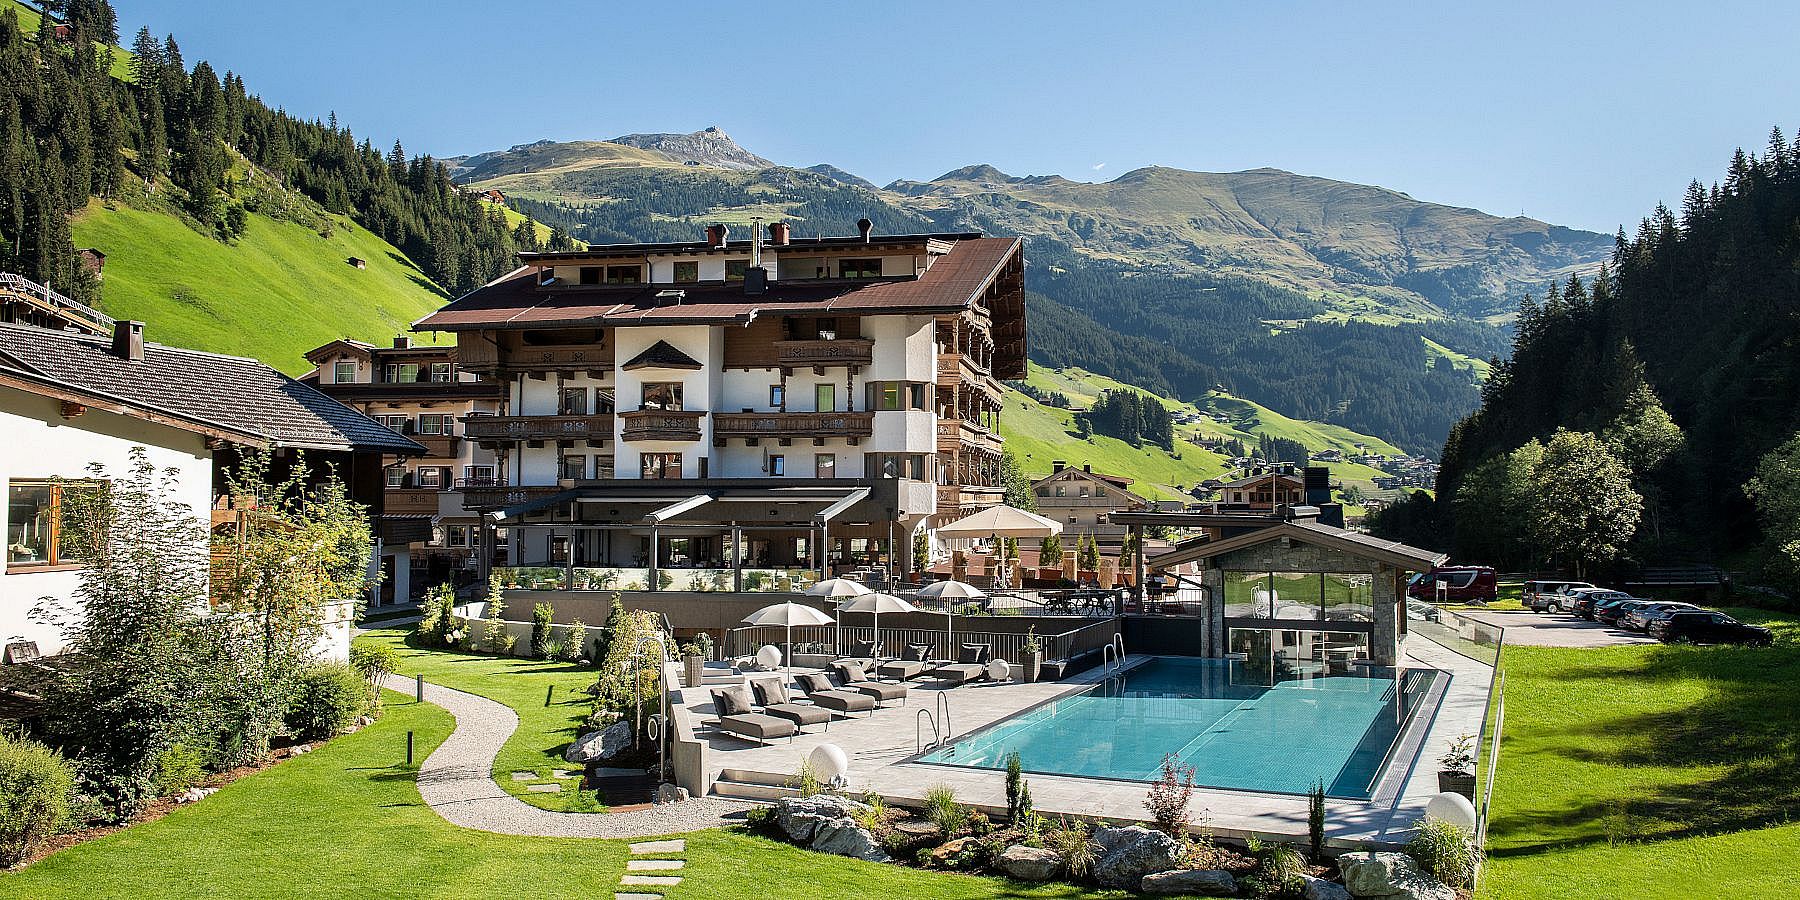 Hotel mit Outdoor Pool im Sommer im Zillertal in den Bergen Tirols